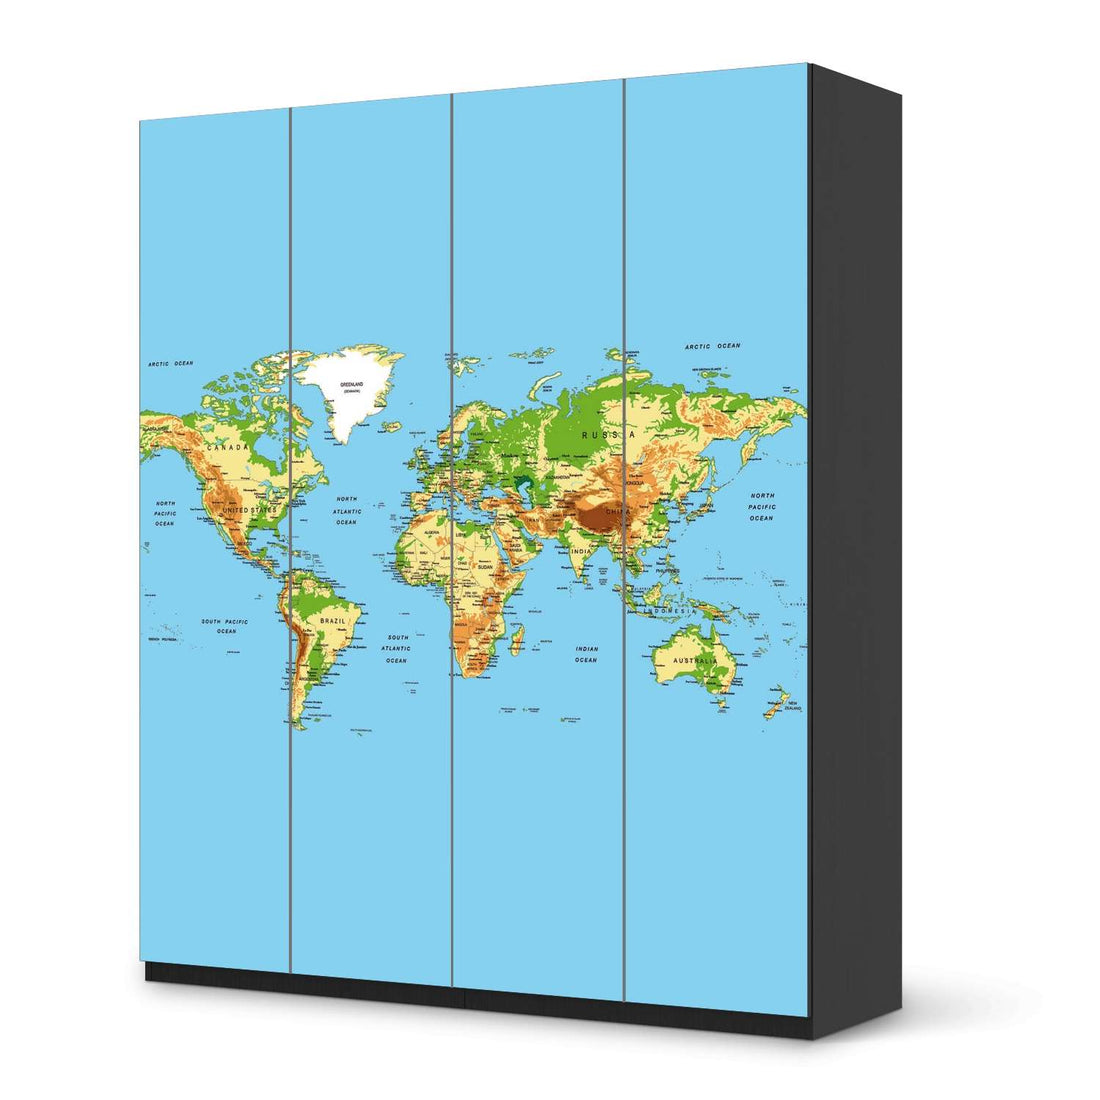 Möbelfolie Geografische Weltkarte - IKEA Pax Schrank 236 cm Höhe - 4 Türen - schwarz